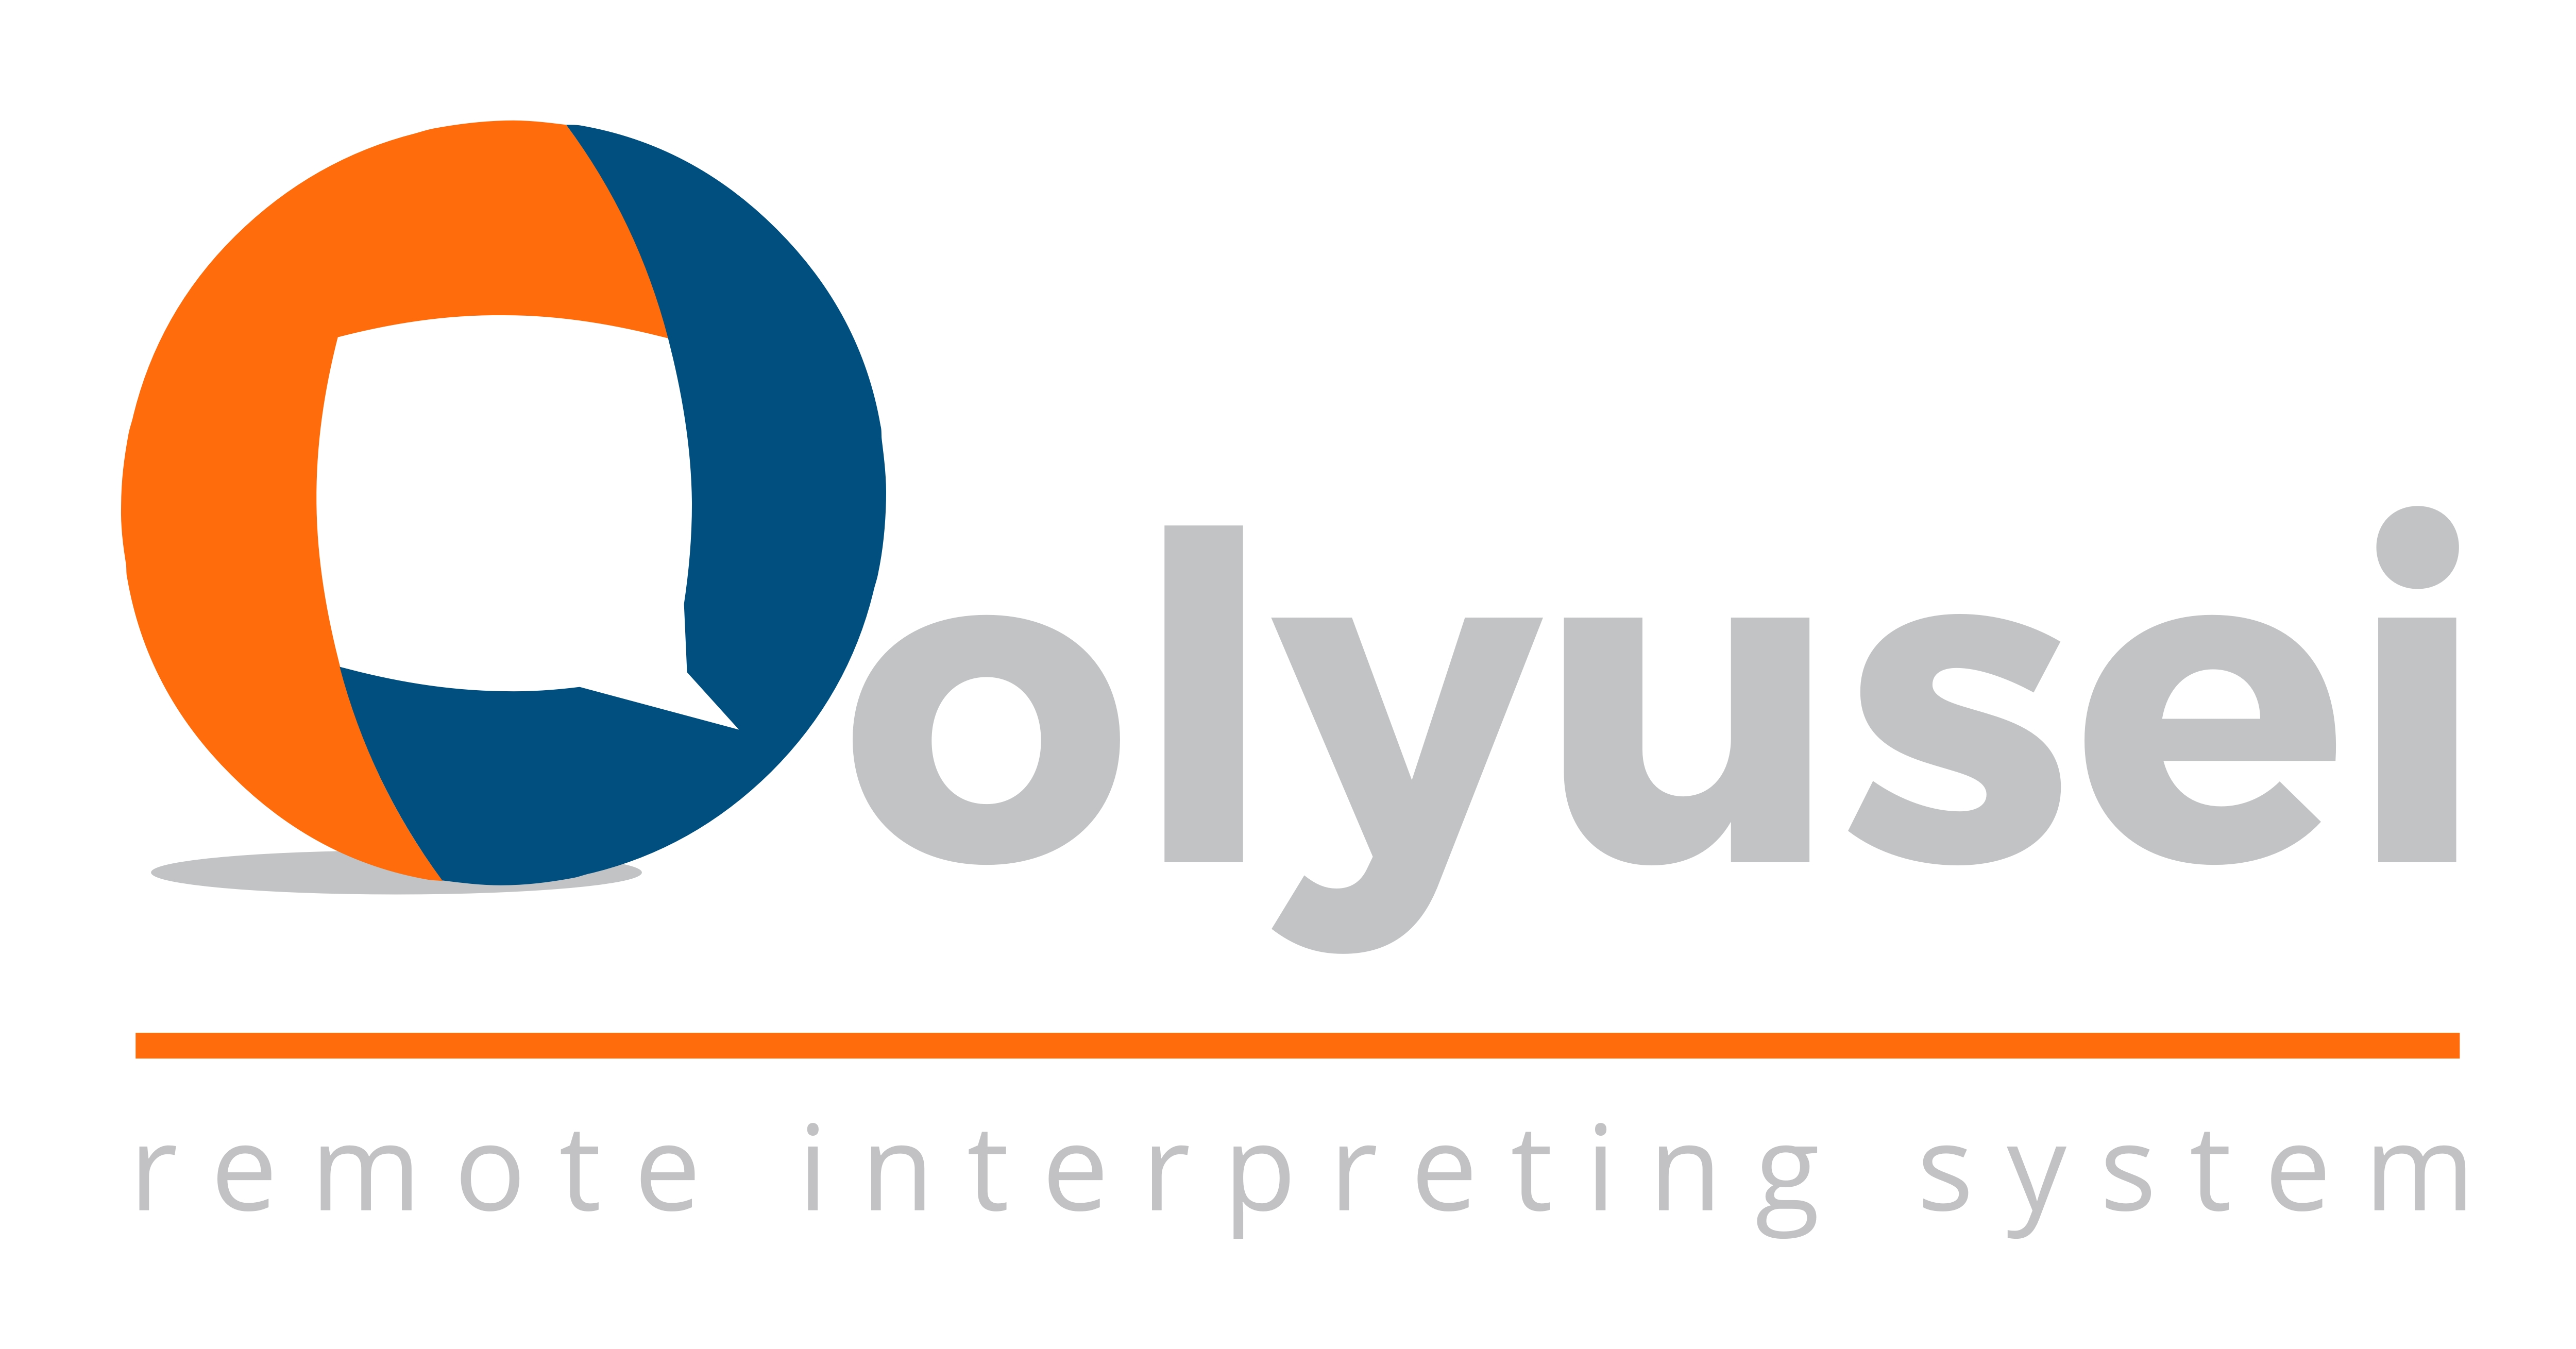 Logo de Olyusei